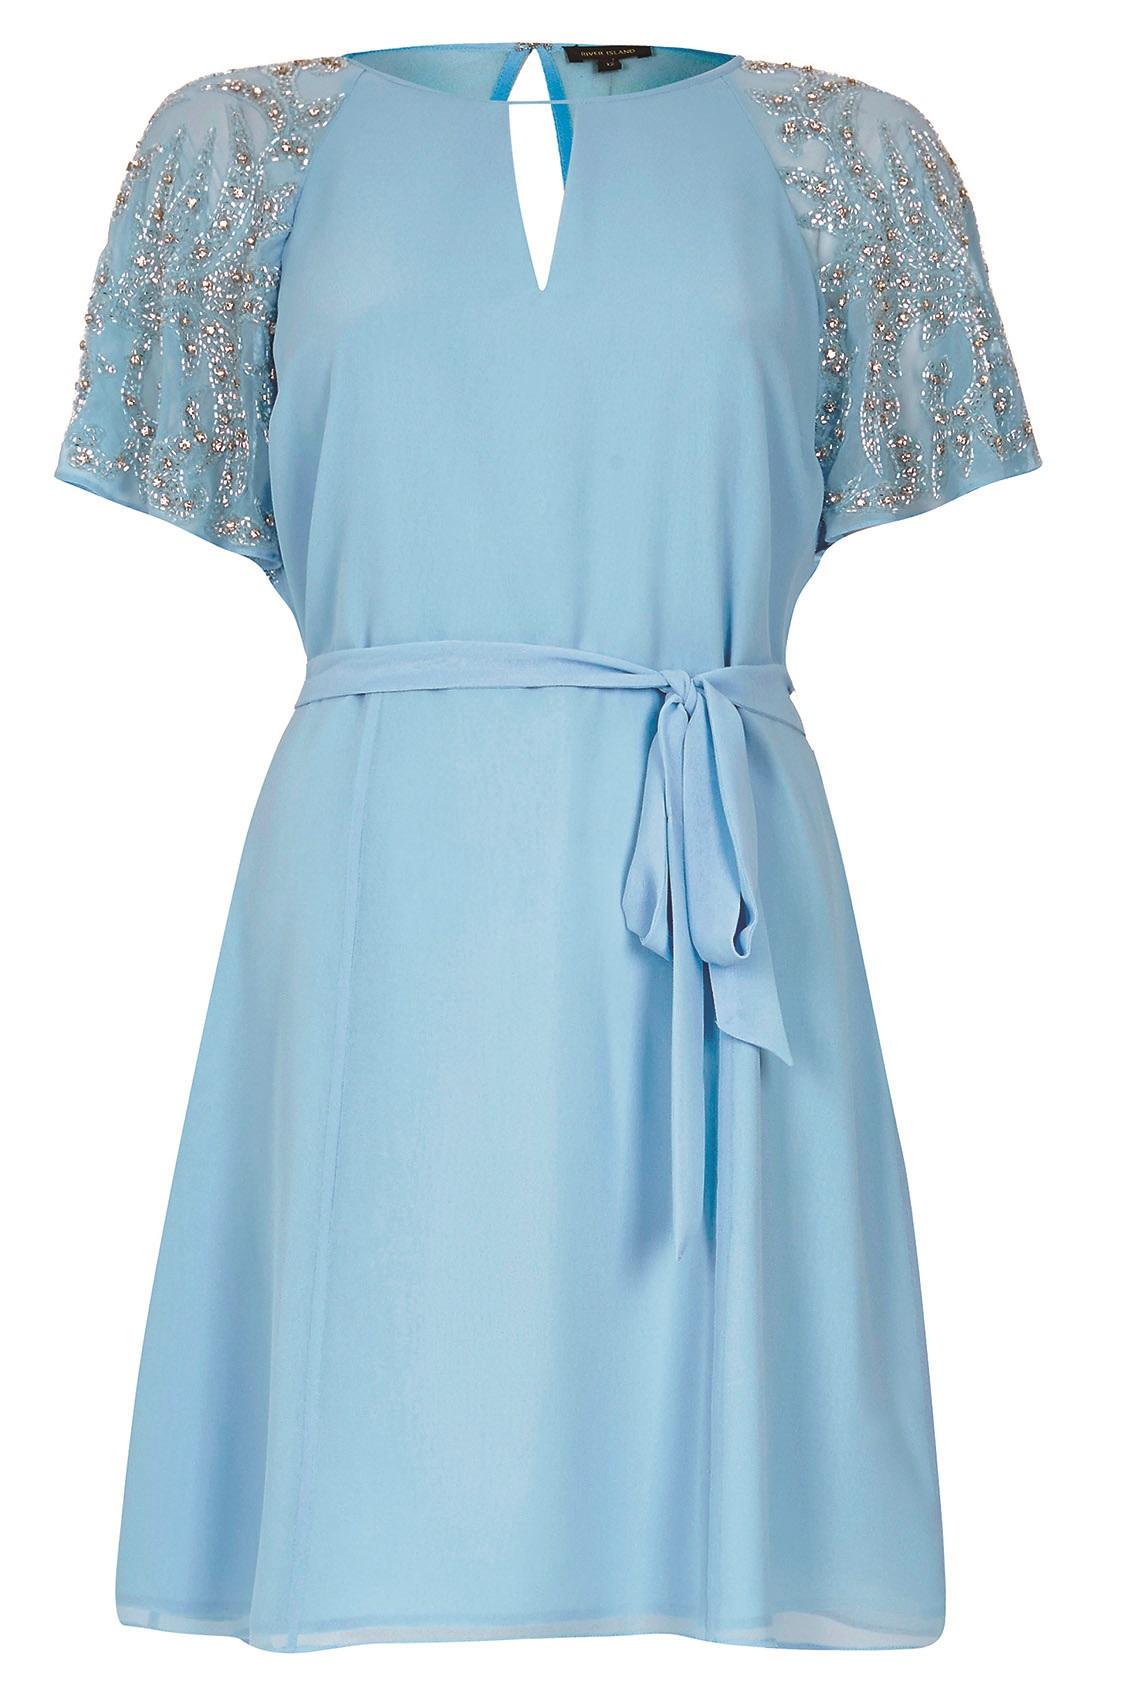 River Island, Blue embellished sleeve dress, £65